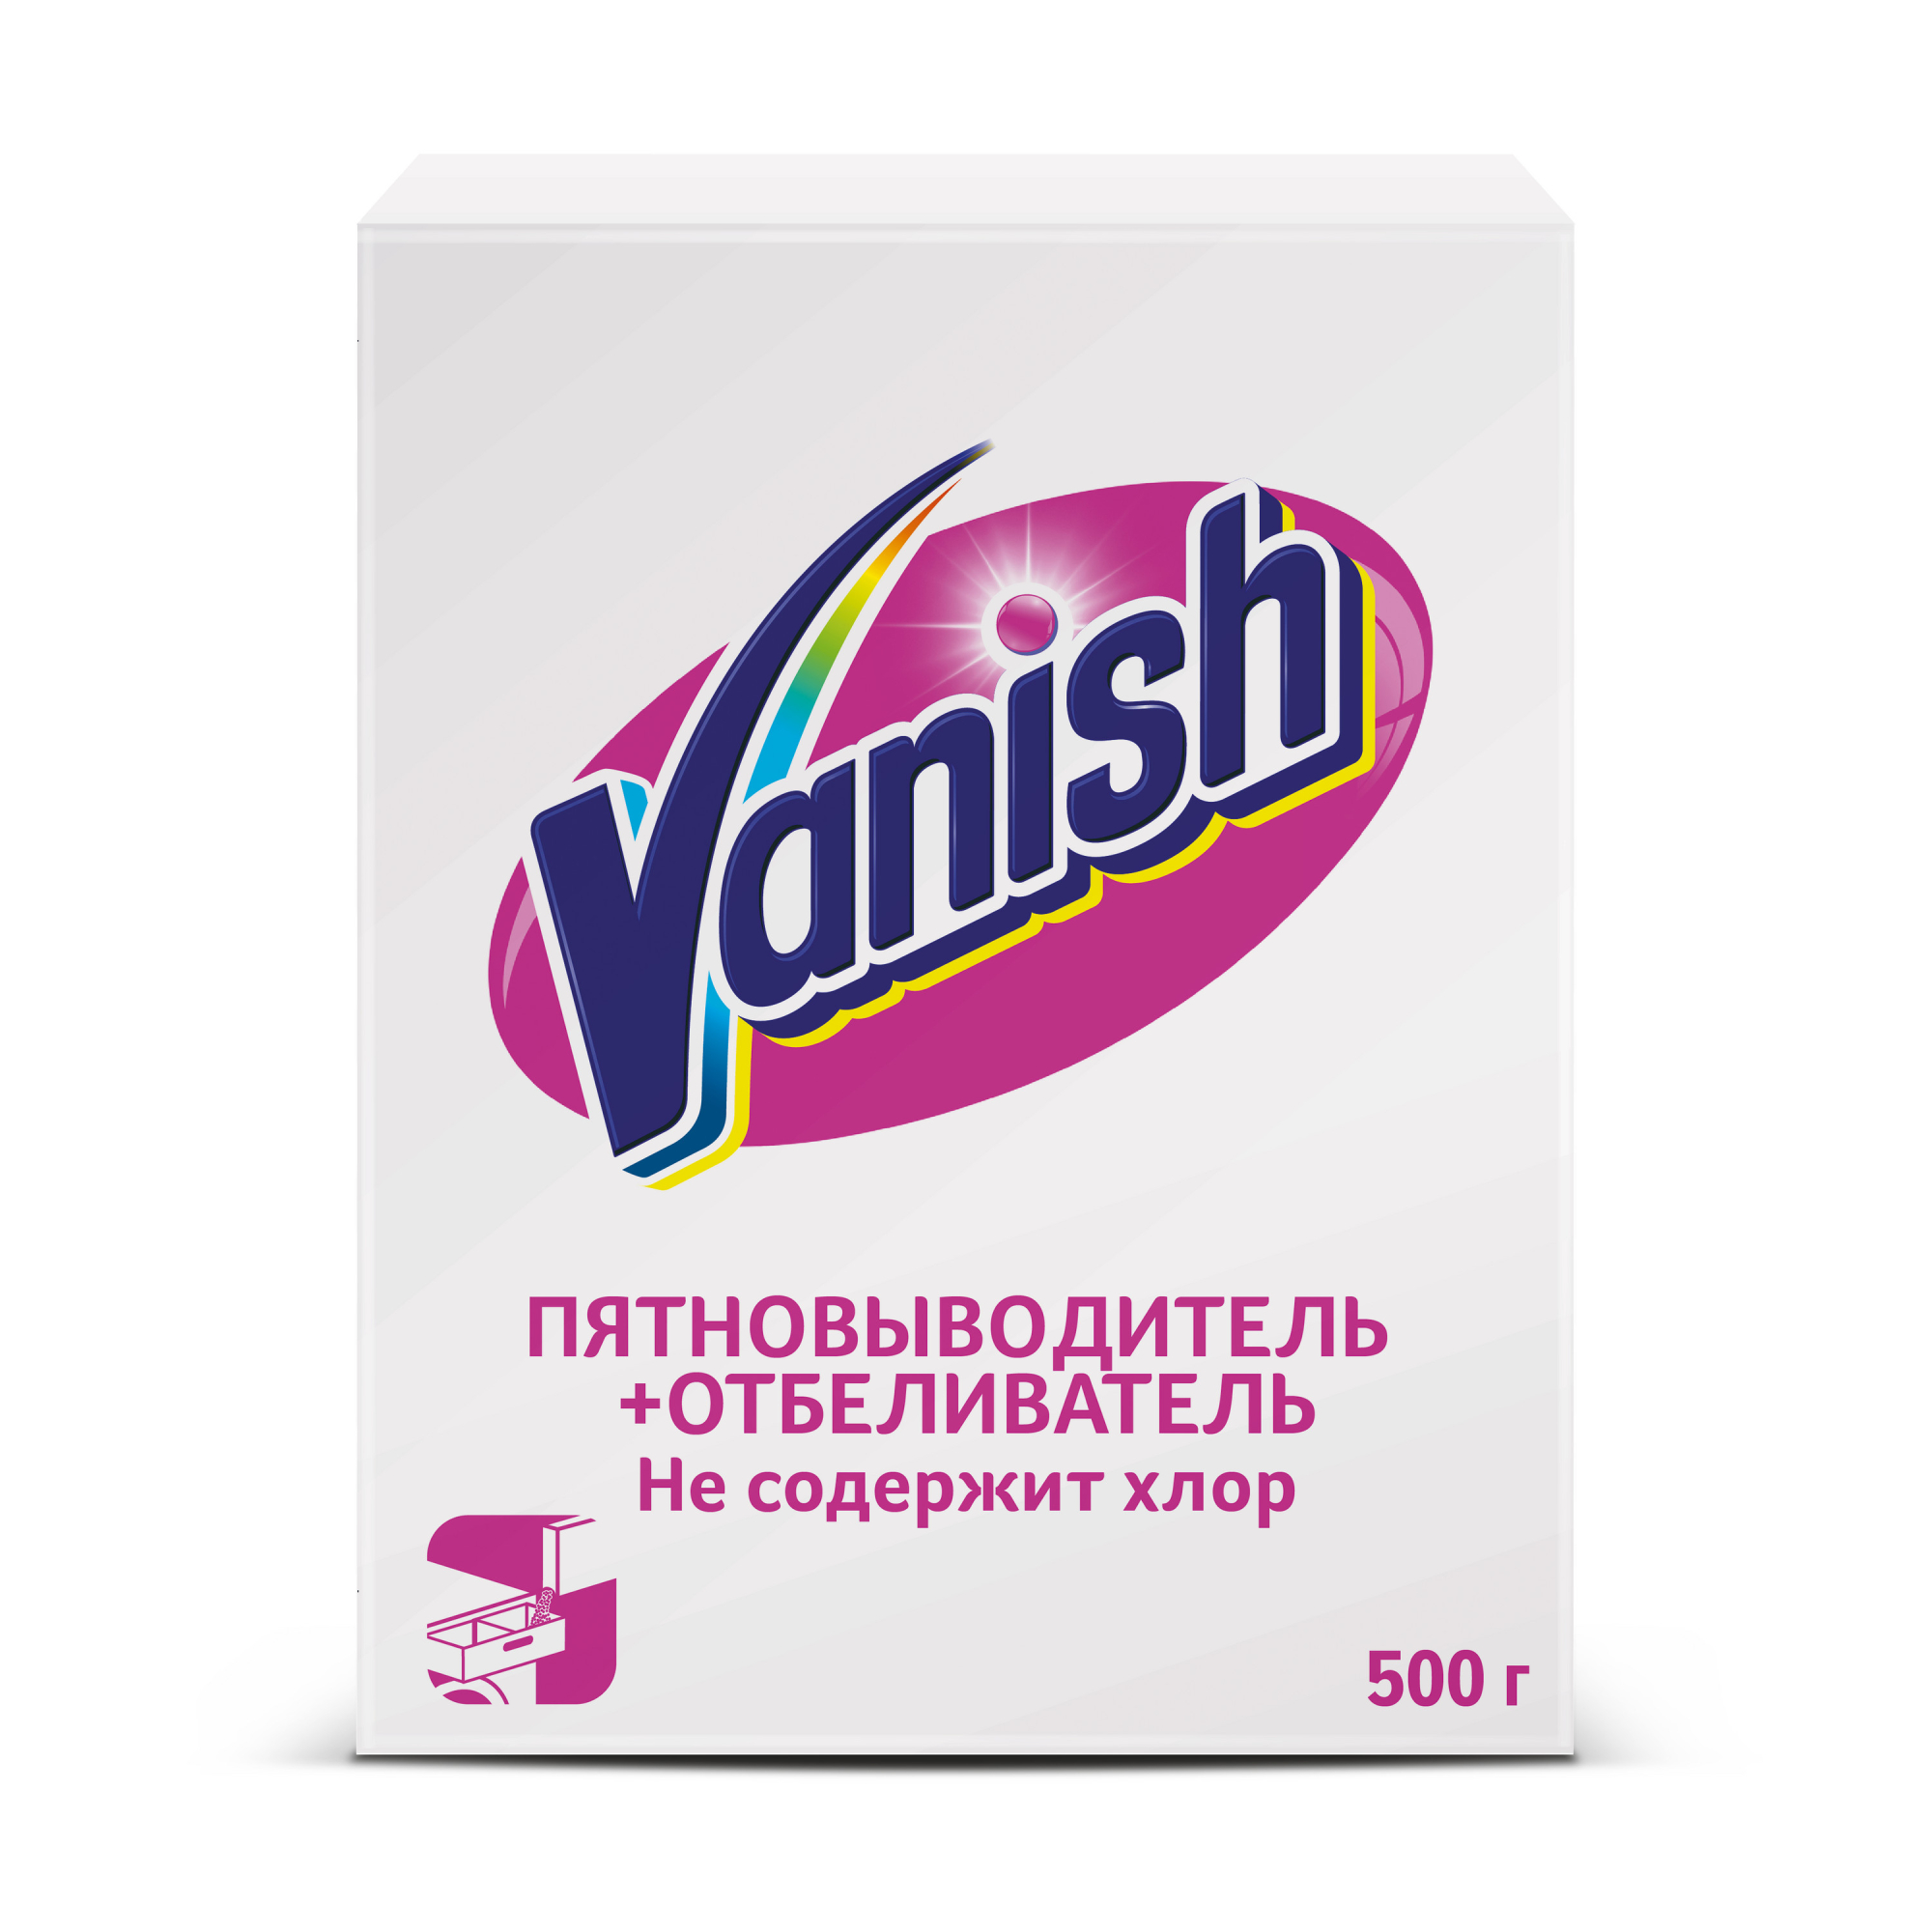 Пятновыводитель Vanish отбеливатель 500 гр dr zhozh кислородный отбеливатель пятновыводитель порошкообразный 900